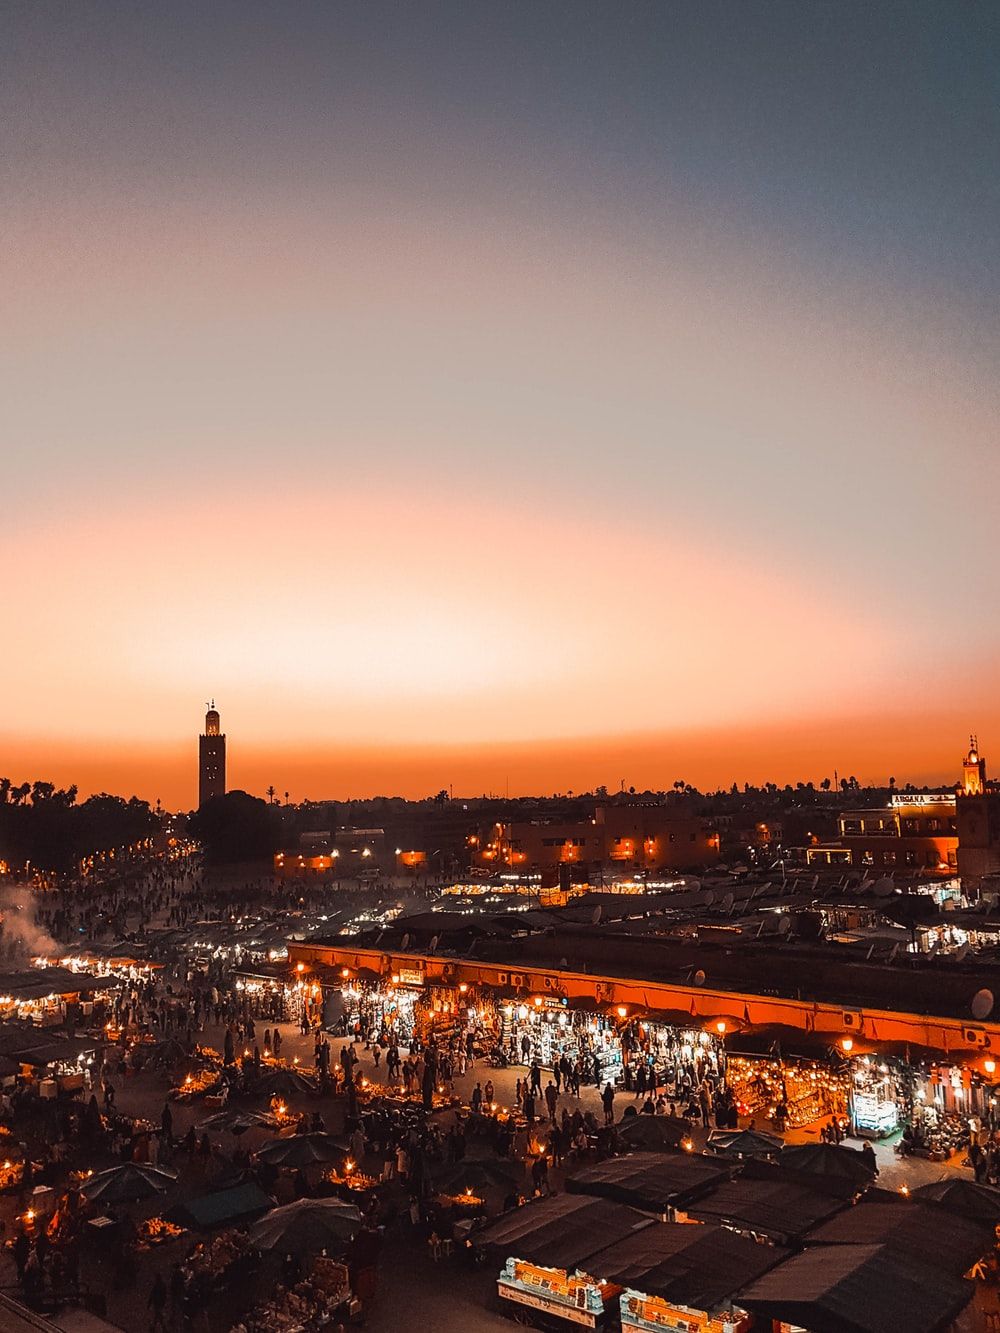 خوشگل ترین والپیپر بازار های پرجمعیت مراکش در شب